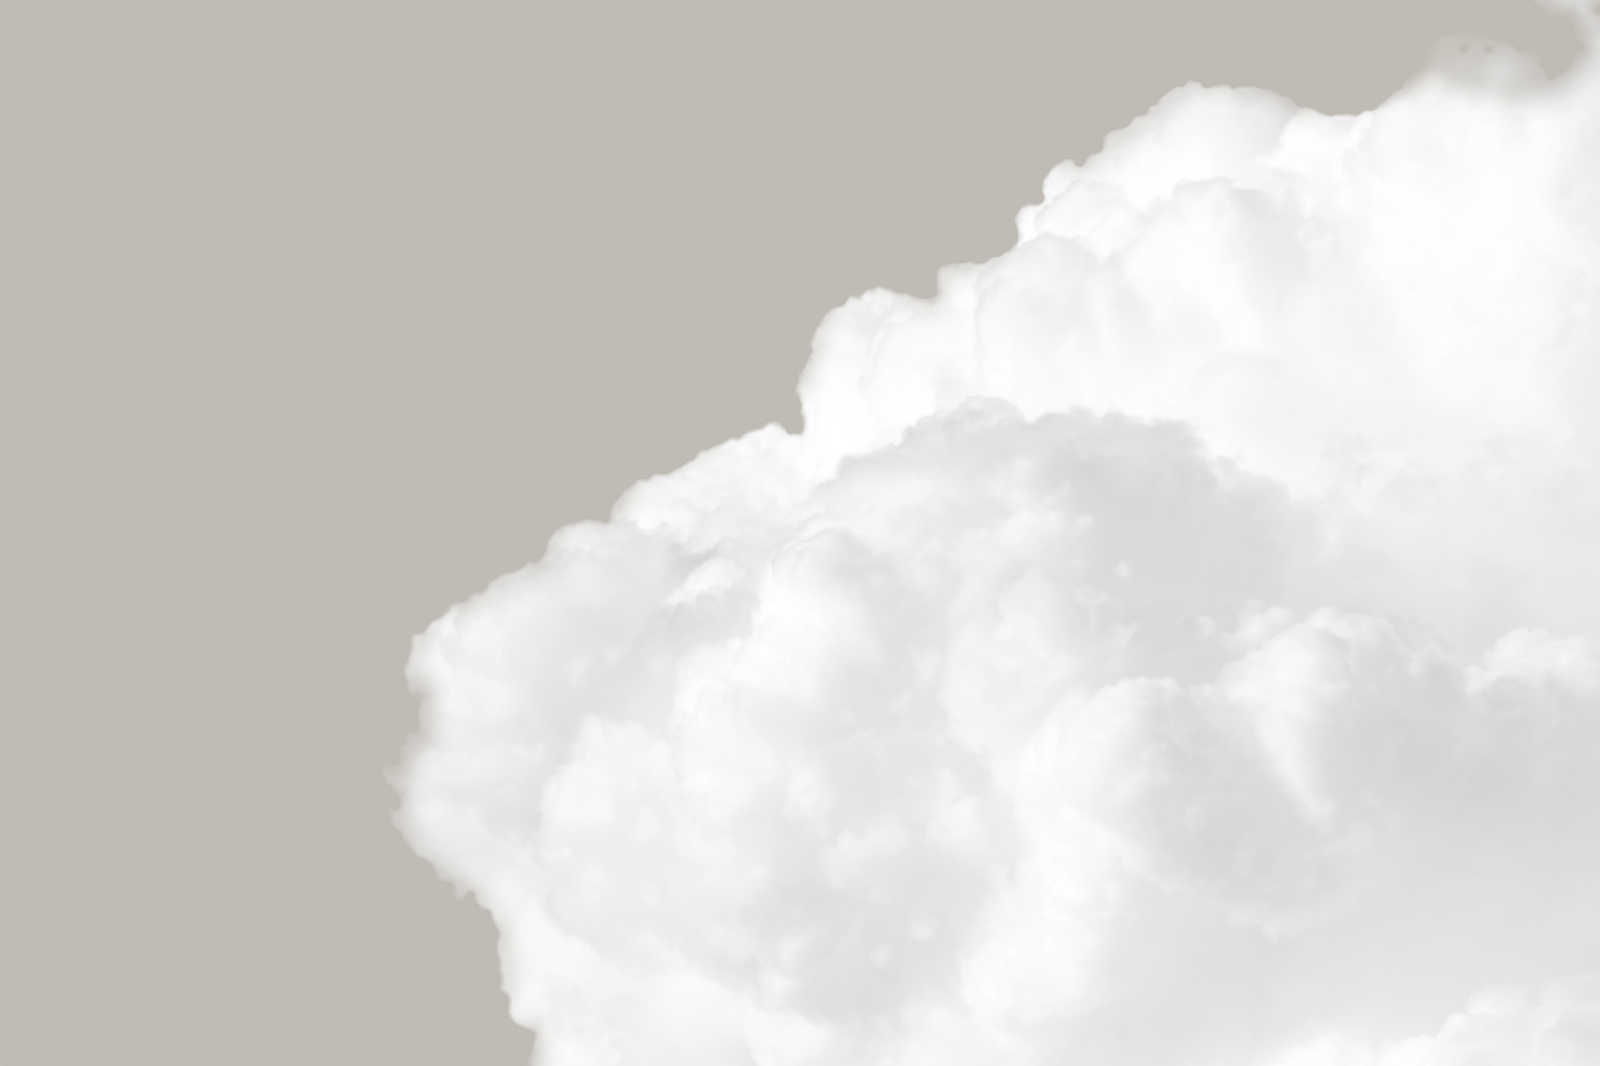             Quadro su tela con nuvole bianche nel cielo grigio - 0,90 m x 0,60 m
        